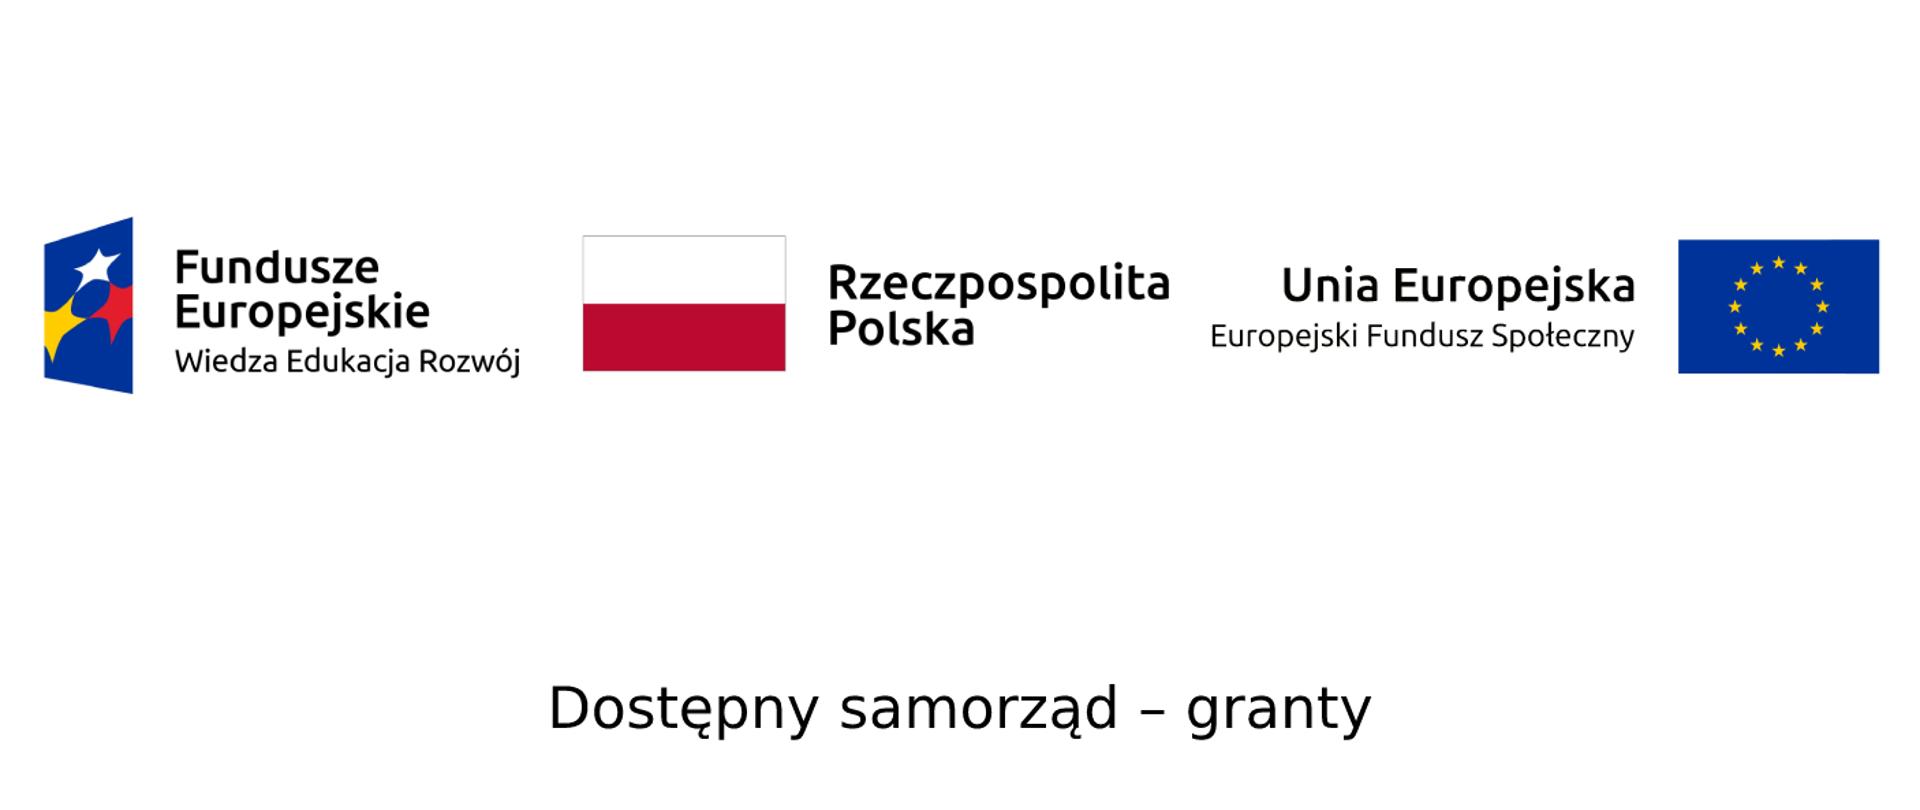 Na białym tle od lewej strony logotyp Funduszy Europejskich z dopiskiem wiedza, edukacja, rozwój. Na środku Flaga Polski z napisem Rzeczpospolita Polska, po prawej stronie flaga Unii Europejskiej z dopiskiem Unia Europejska - Europejski Fundusz Społeczny. Pod ikonami czarny napis dostępny samorząd - granty.